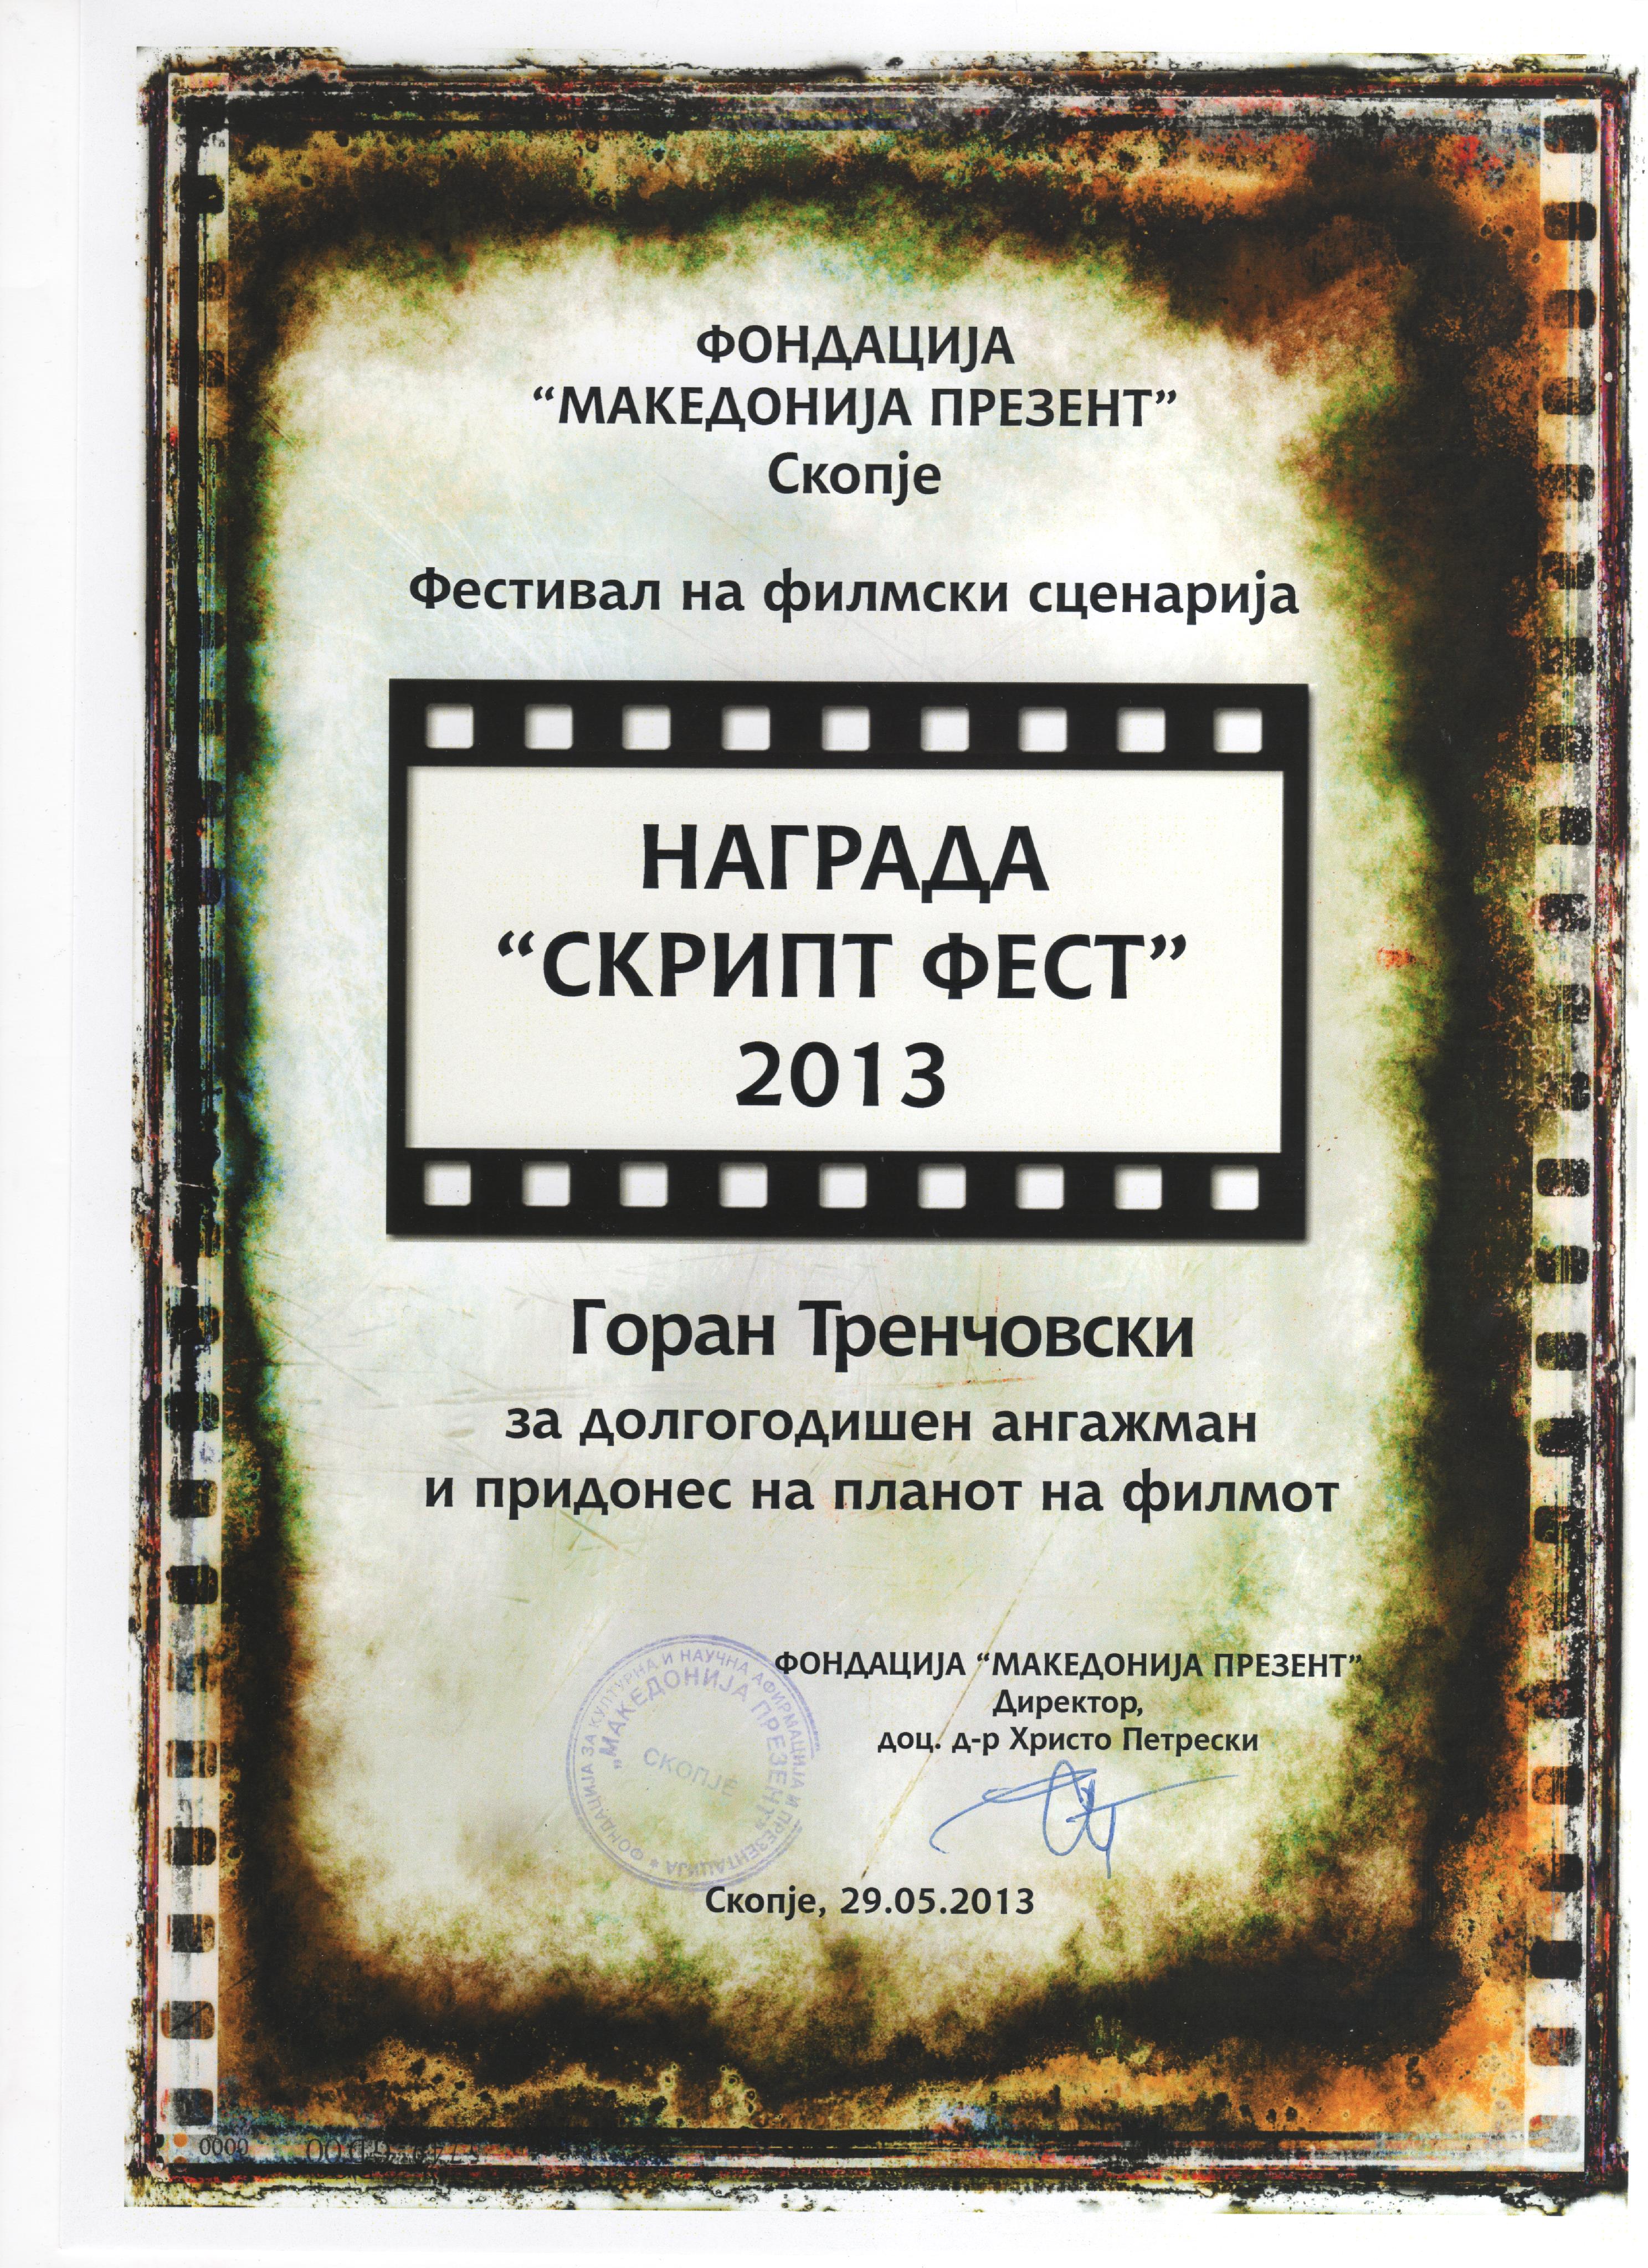 Skript Fest Award